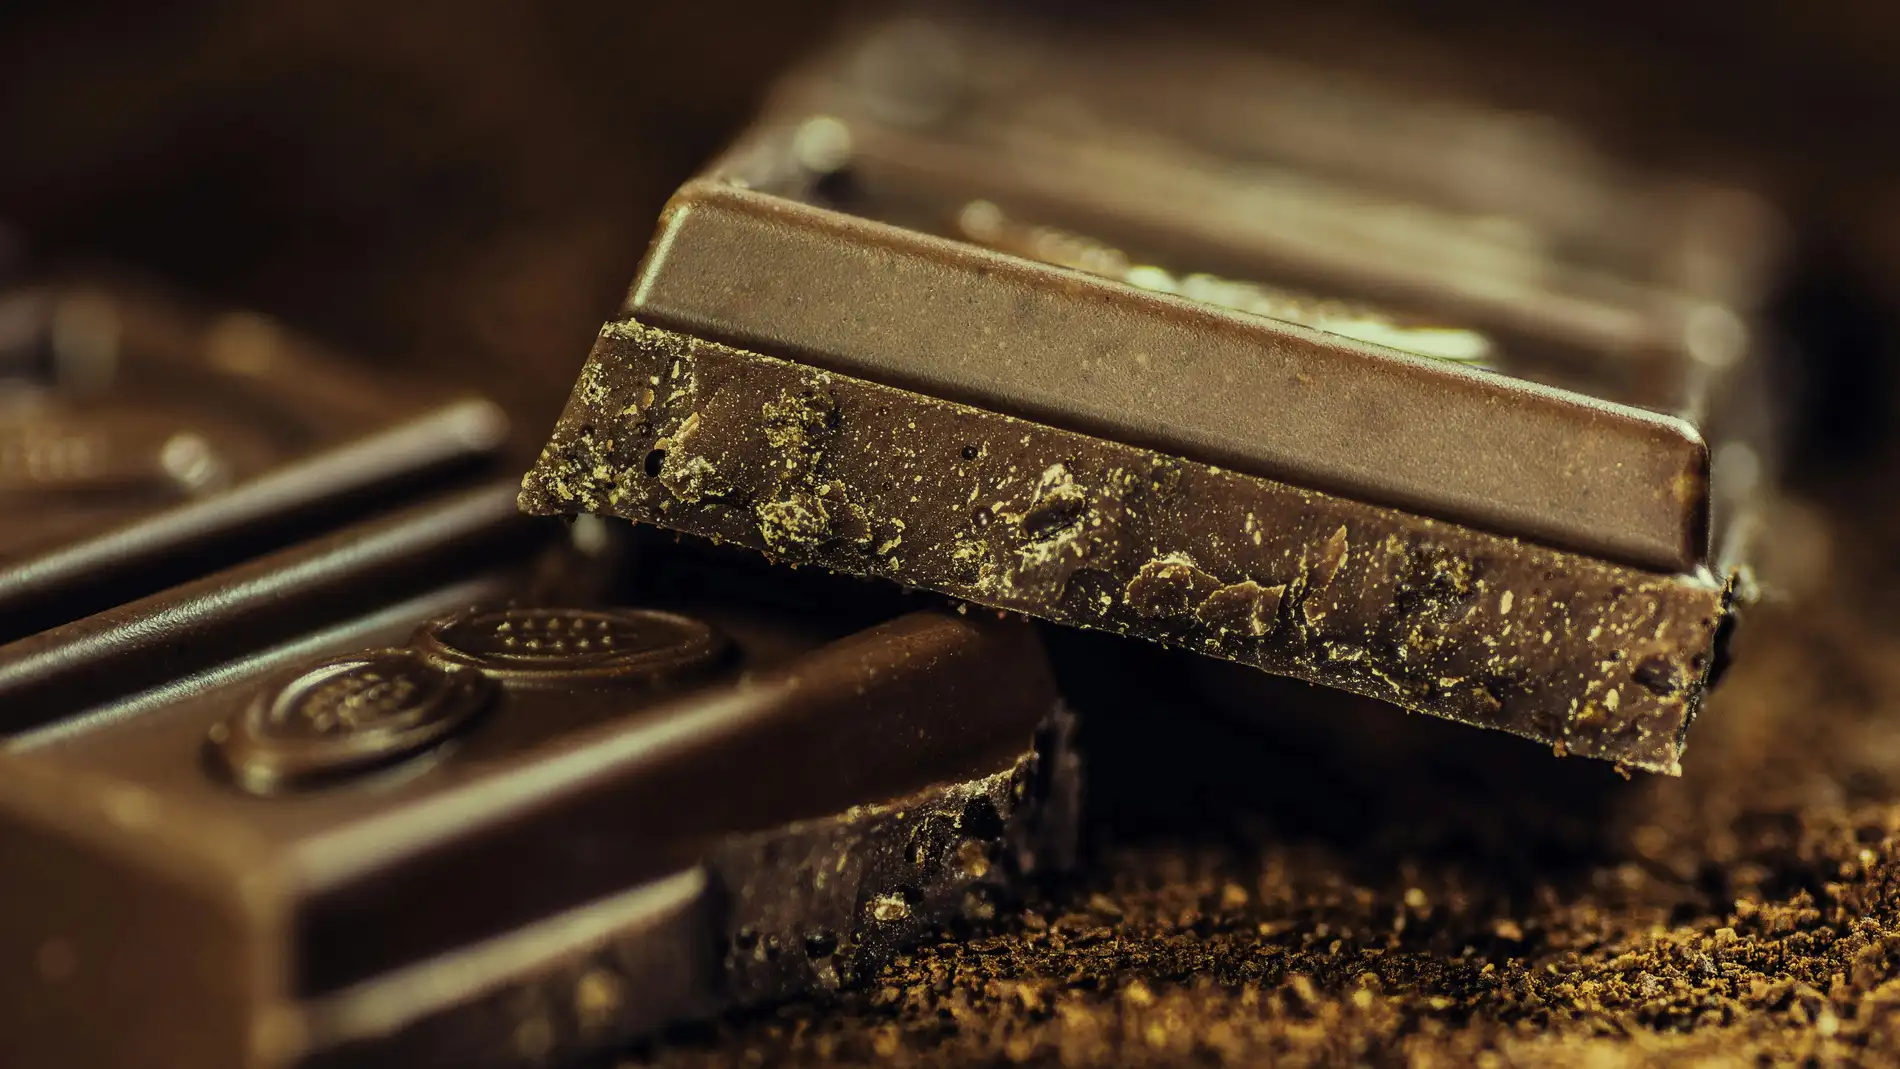 Los mejores chocolates negros por menos de un euro 